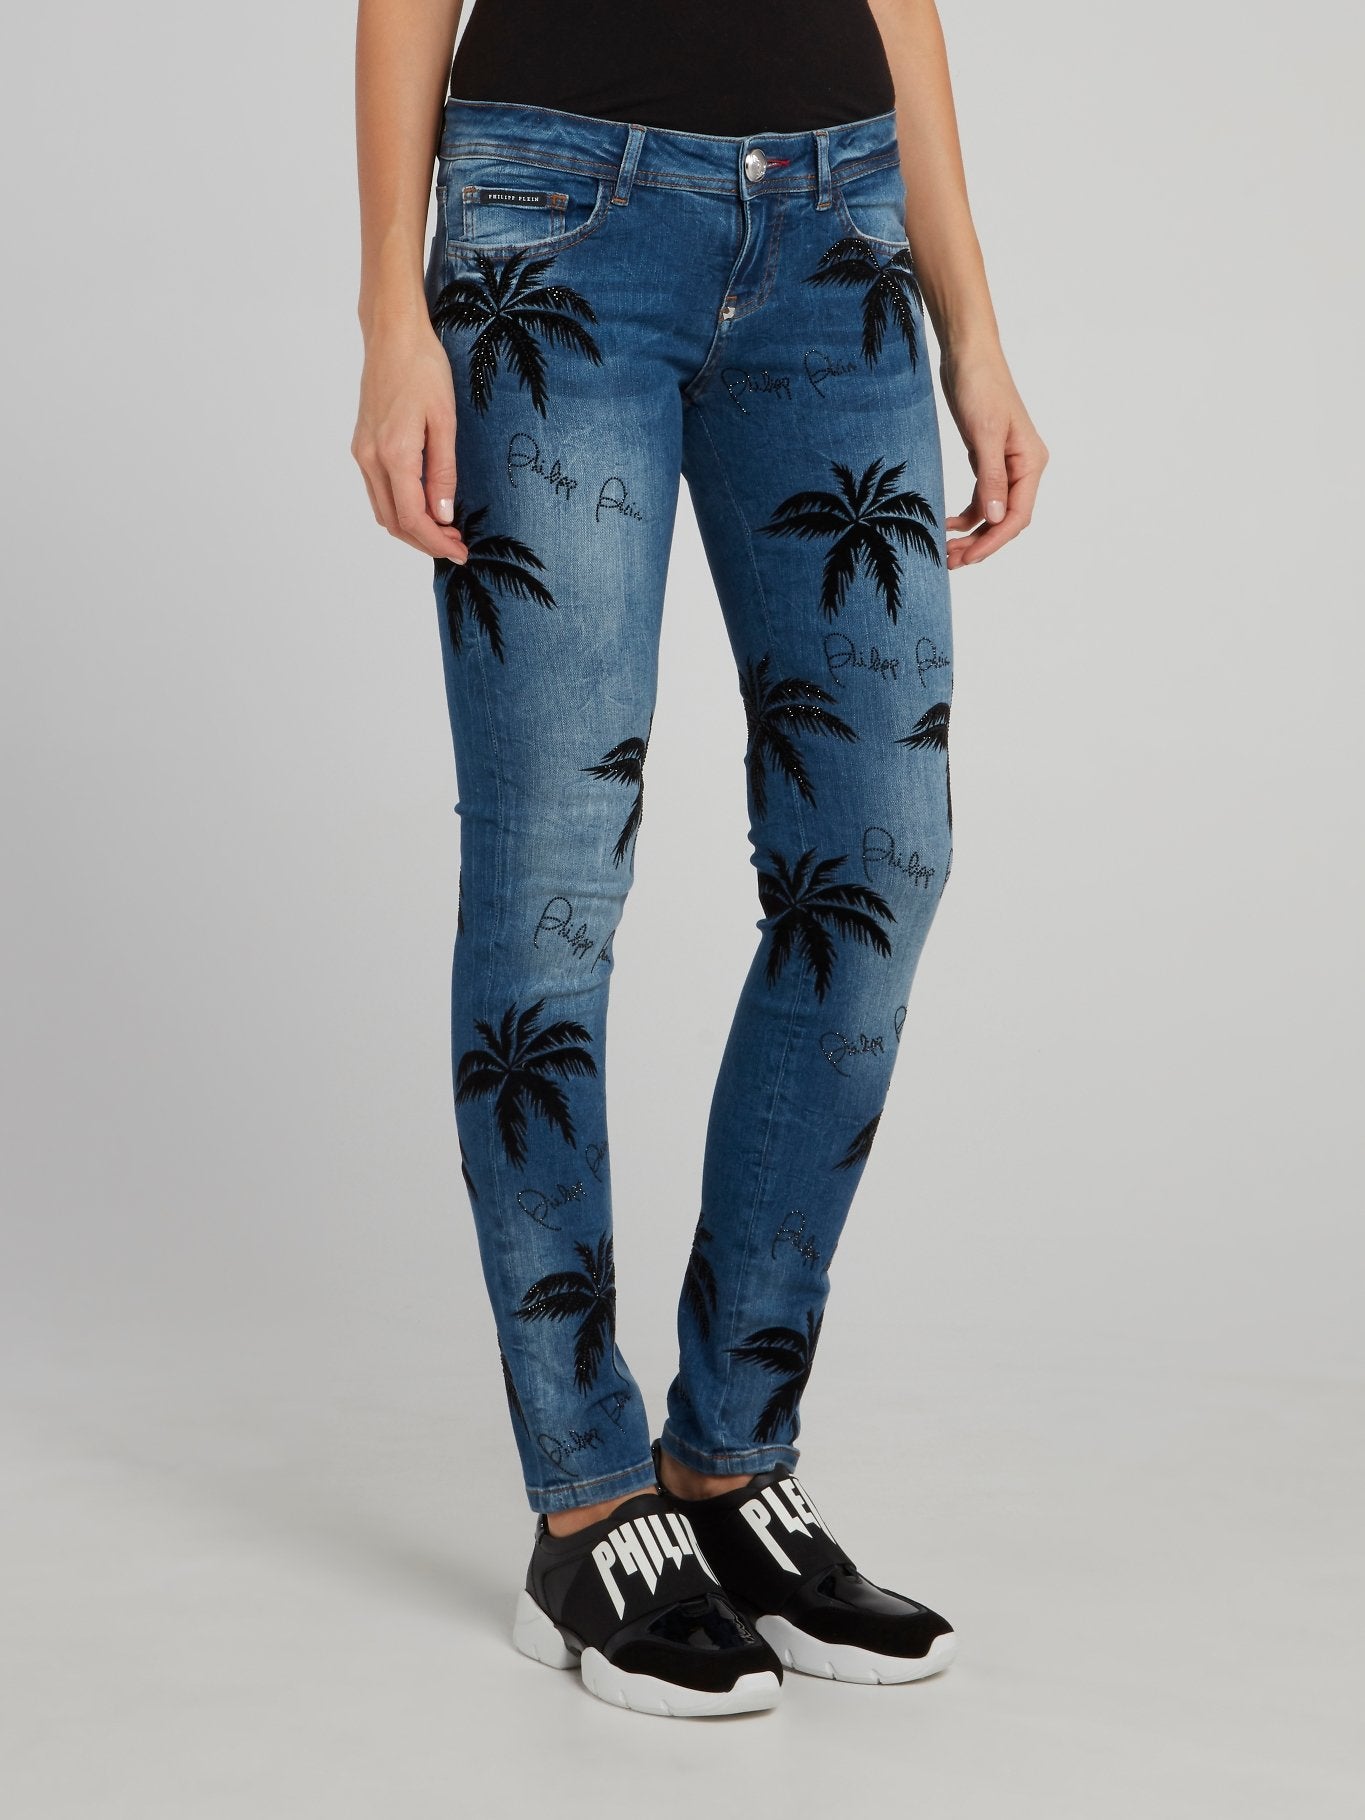 Узкие джинсы с отделкой Aloha Plein